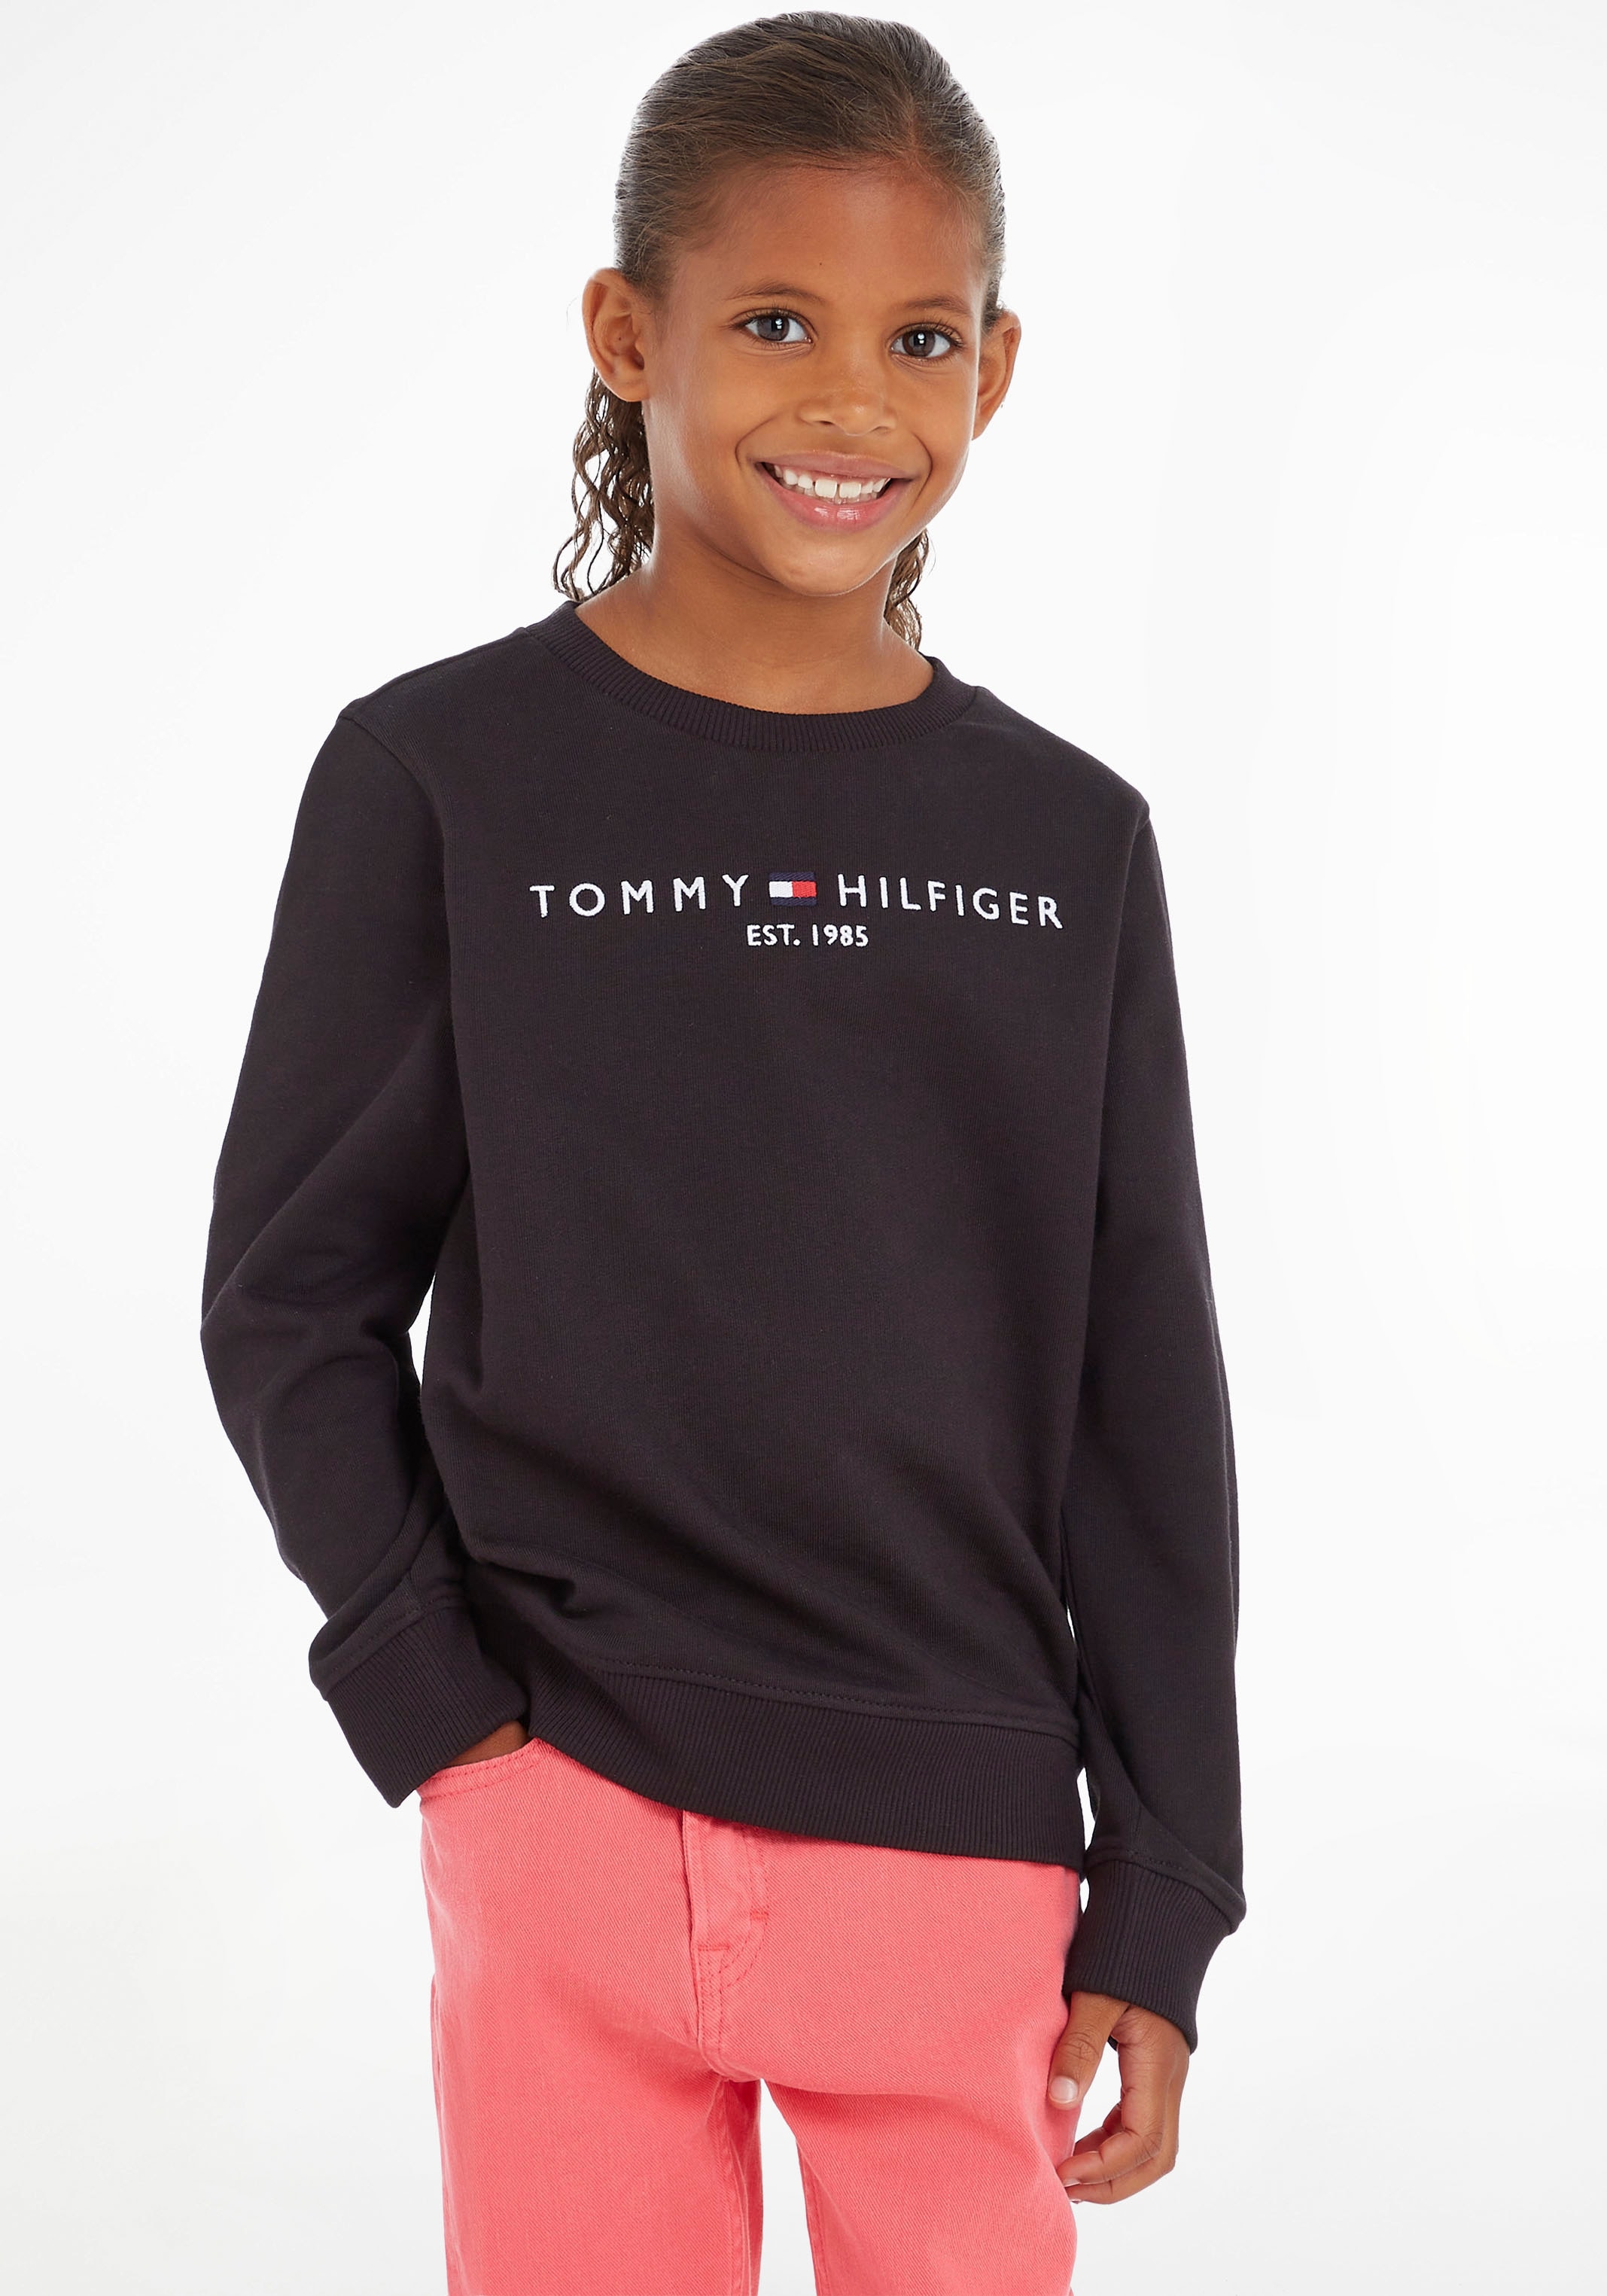 Tommy Hilfiger Sweatshirt OTTO Shop im Online